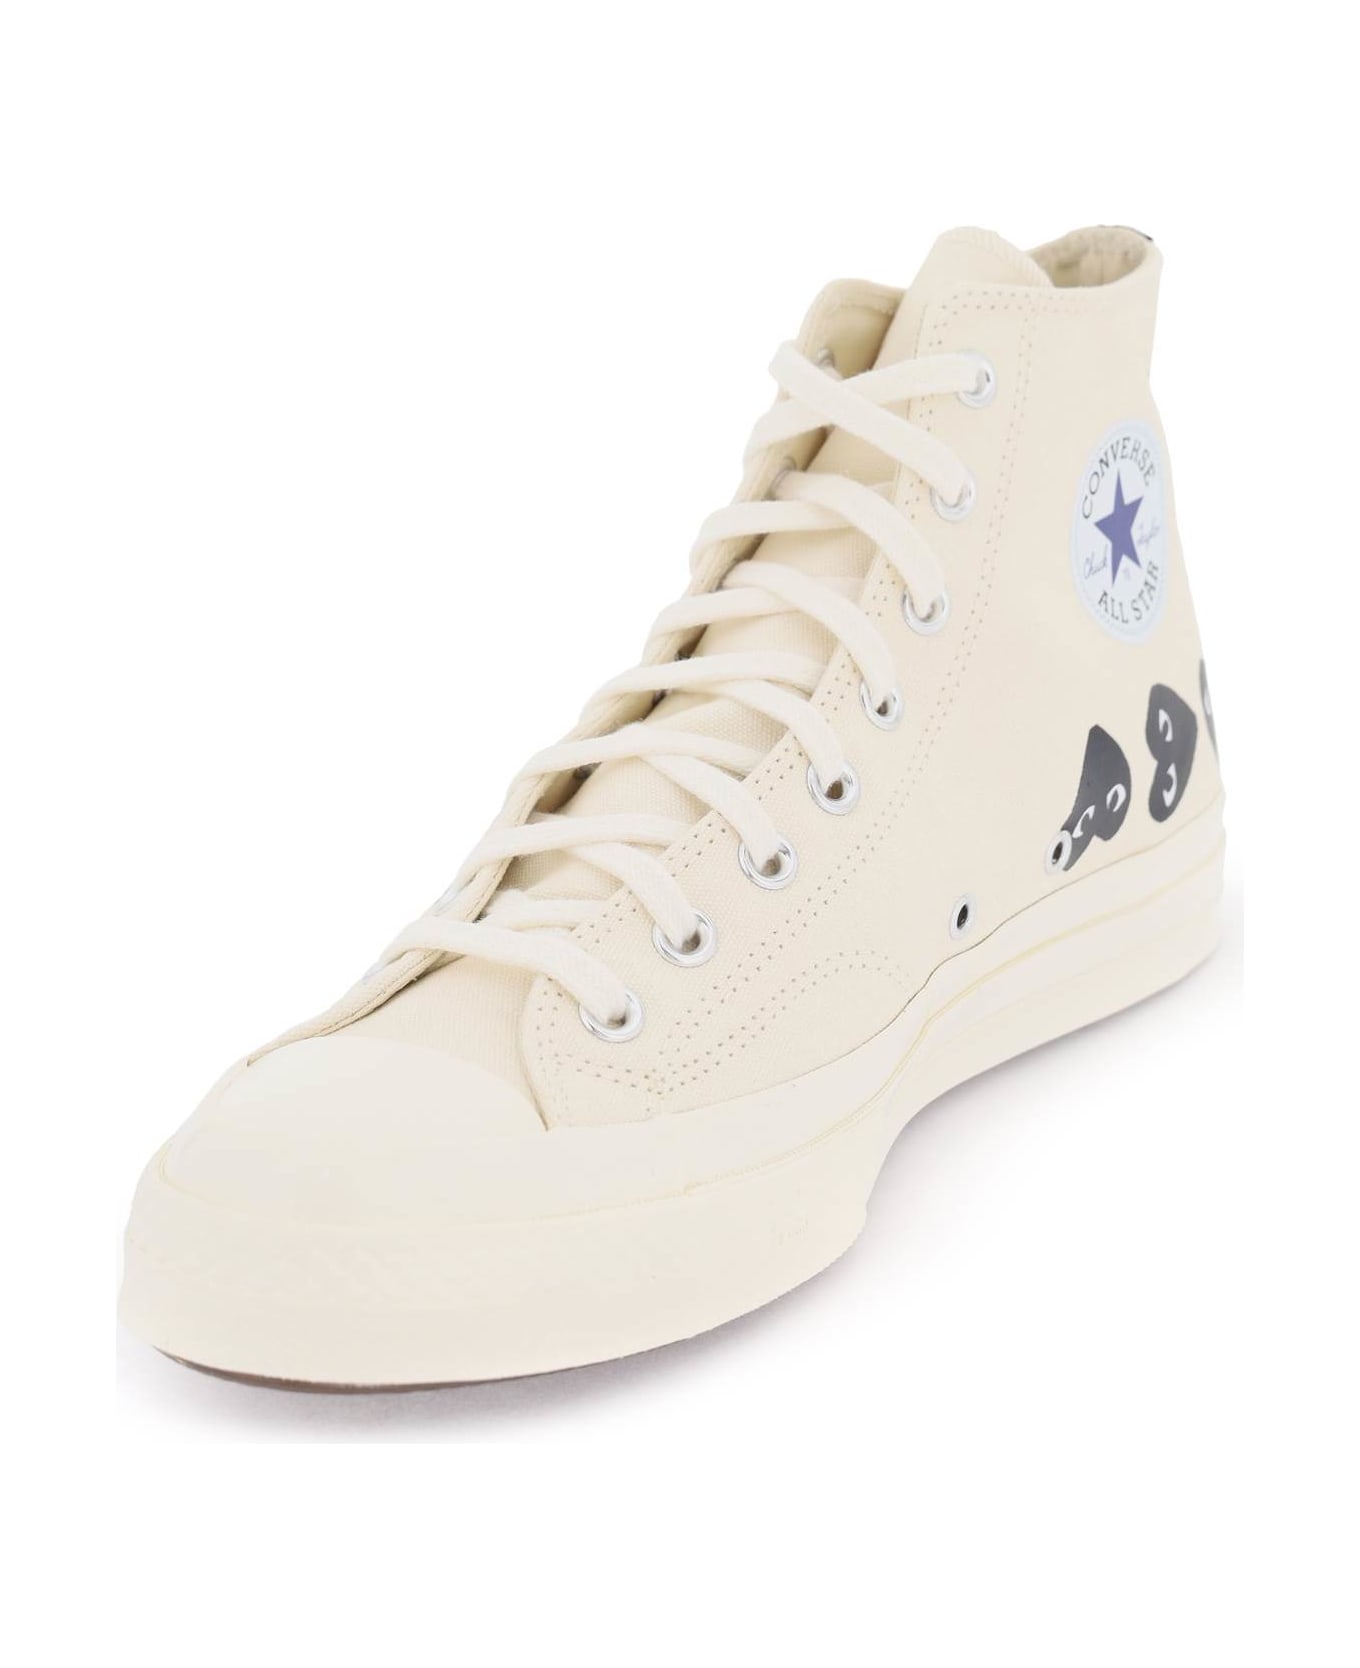 Comme des Garçons Shirt Boy Multi Heart Converse X Comme Des Gar S Play Hi-top Sneakers - White